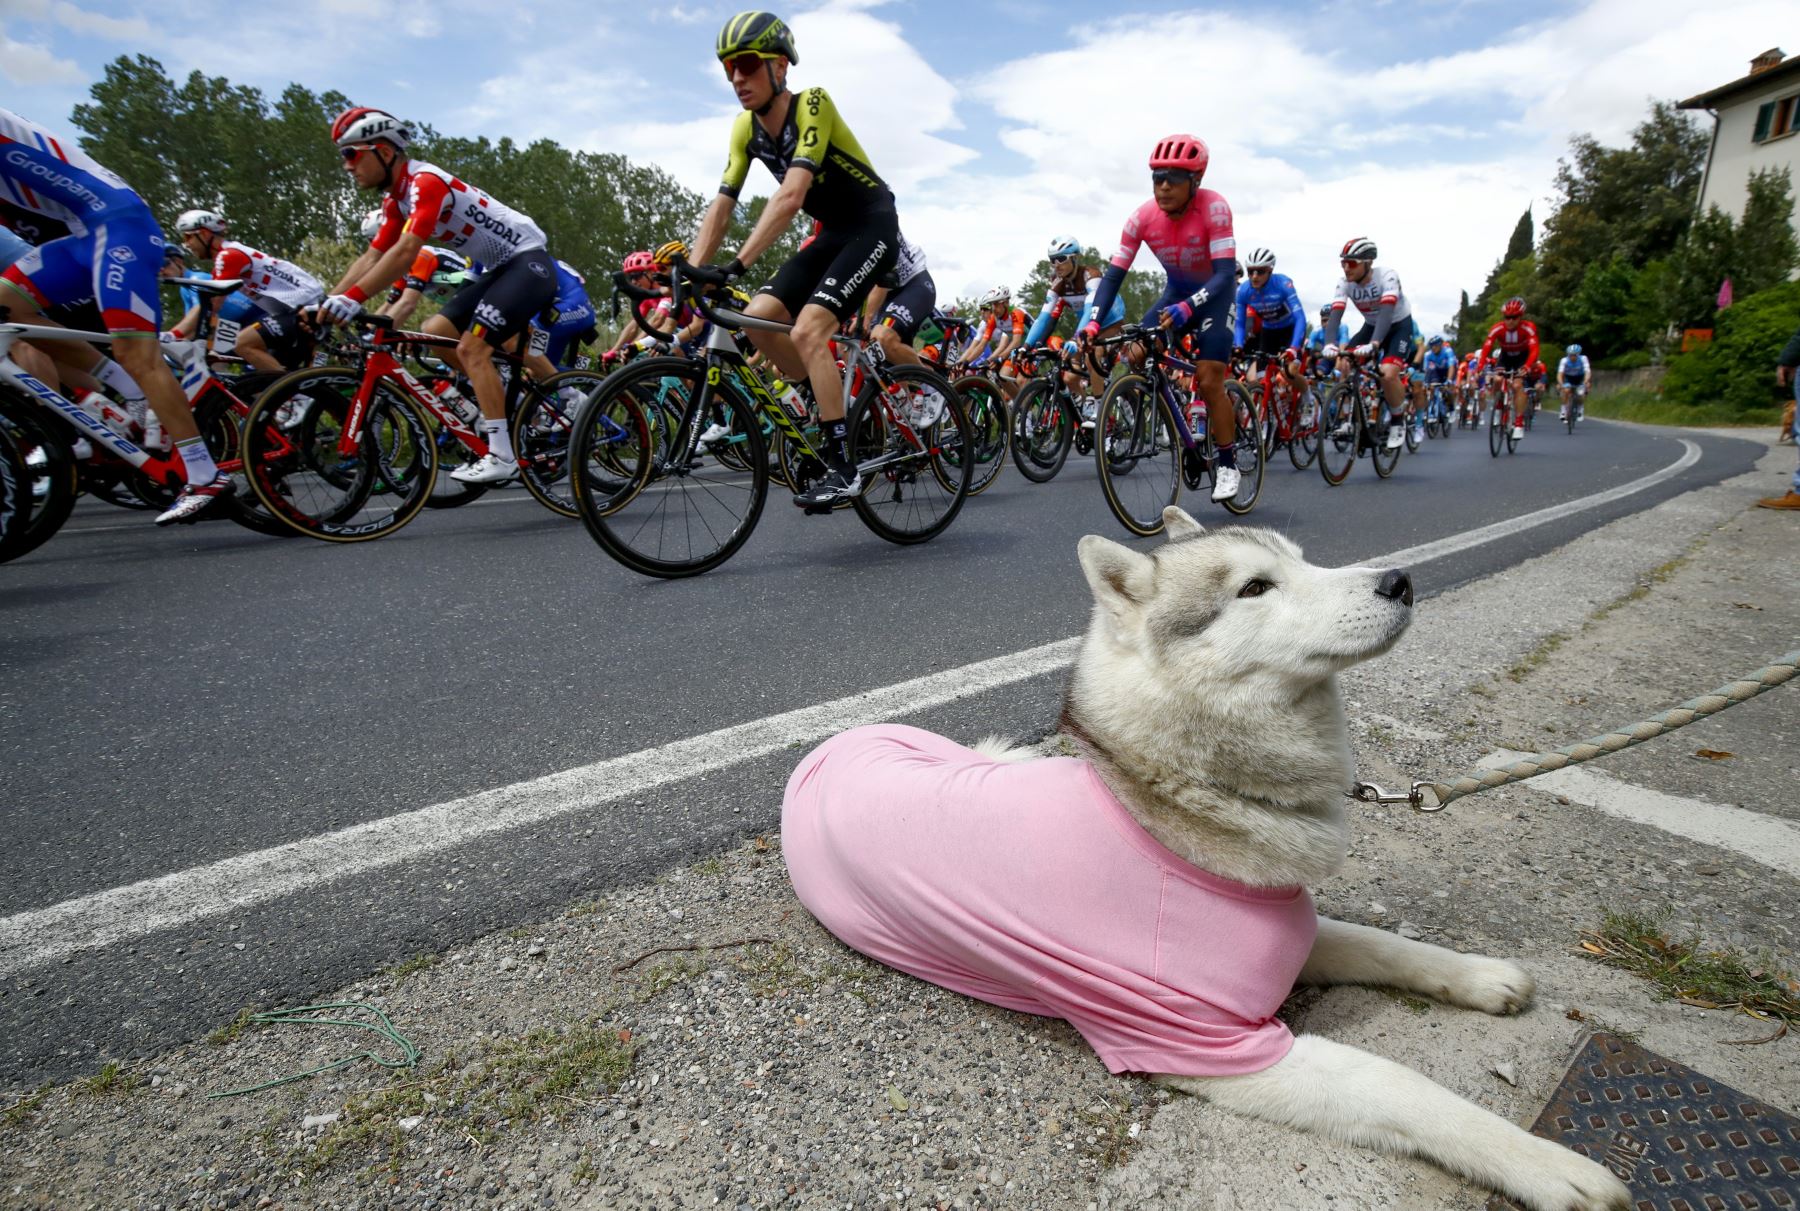 Ciclistas compiten en la cuarta etapa del 102º Giro de Italia - Tour de Italia - carrera de 235 km desde Orbetello hasta Frascati. Foto: AFP